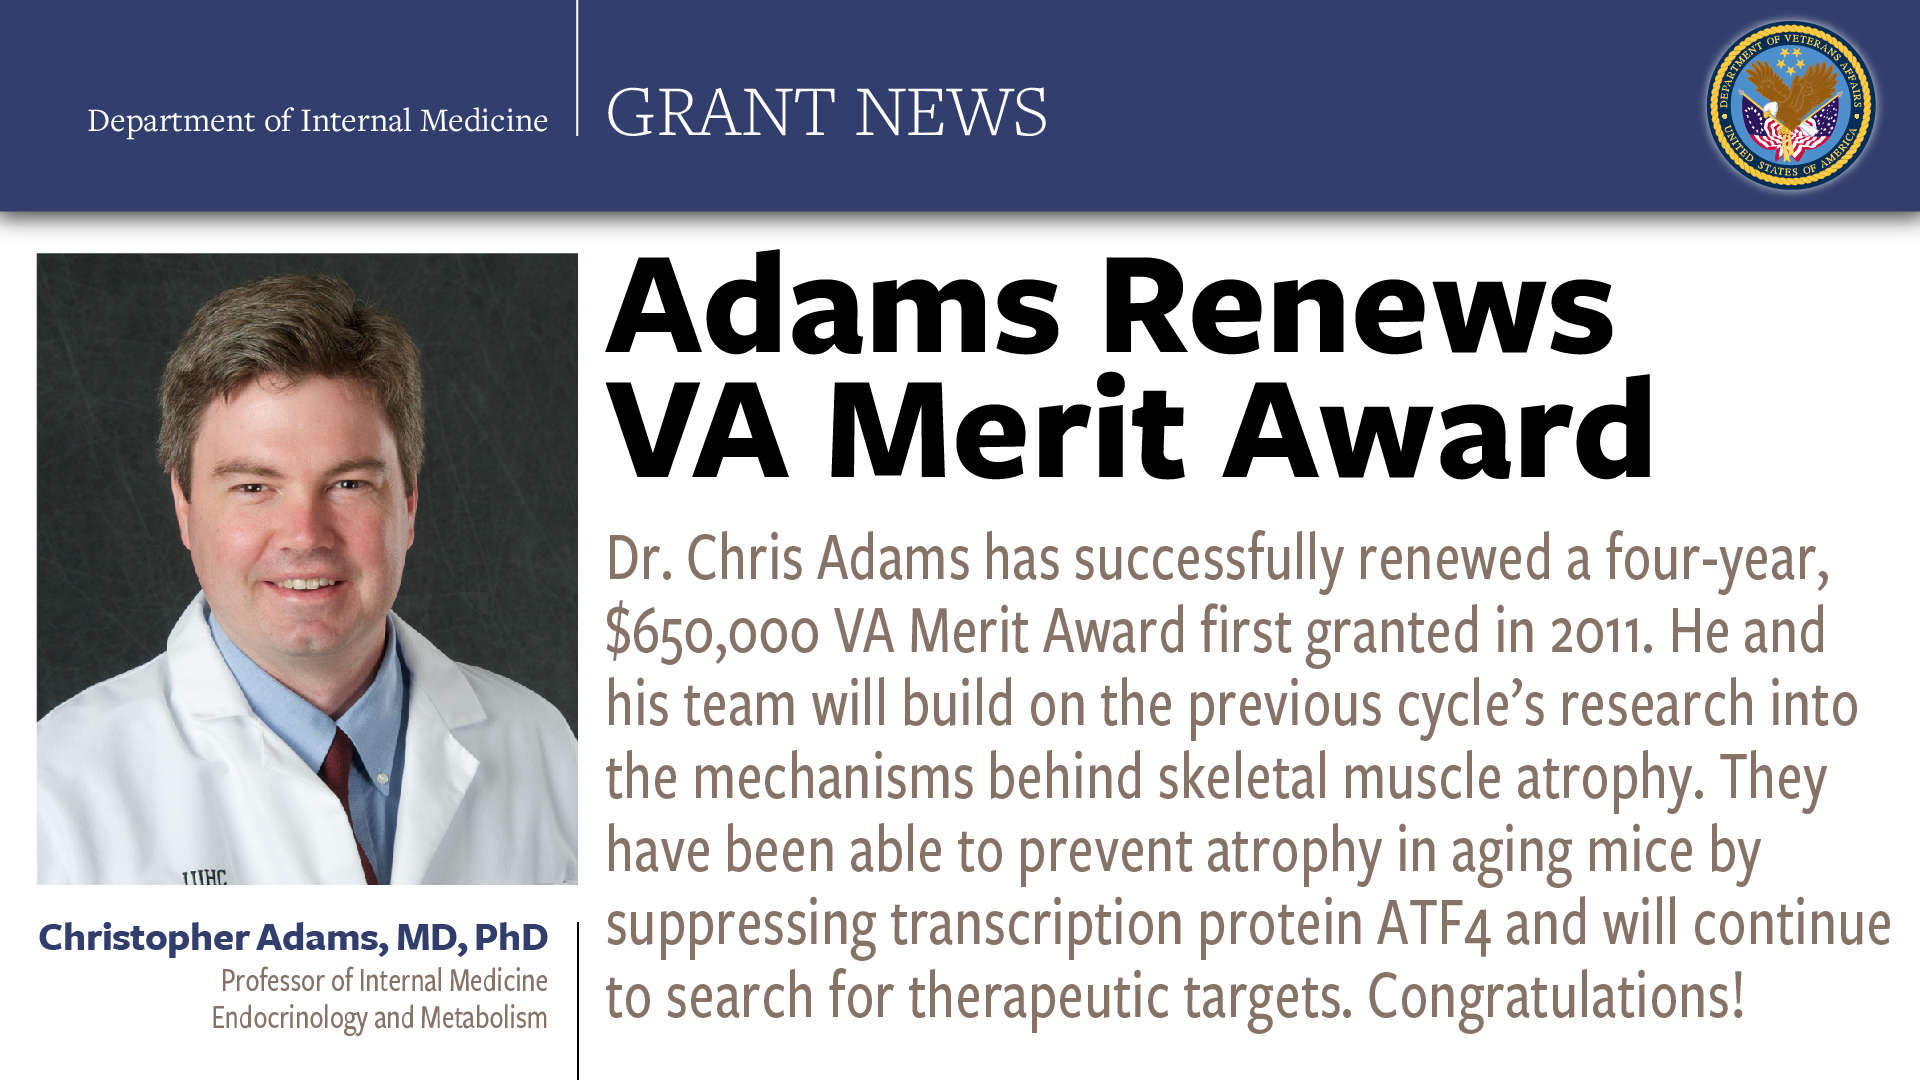 Adams Renews VA Merit Award